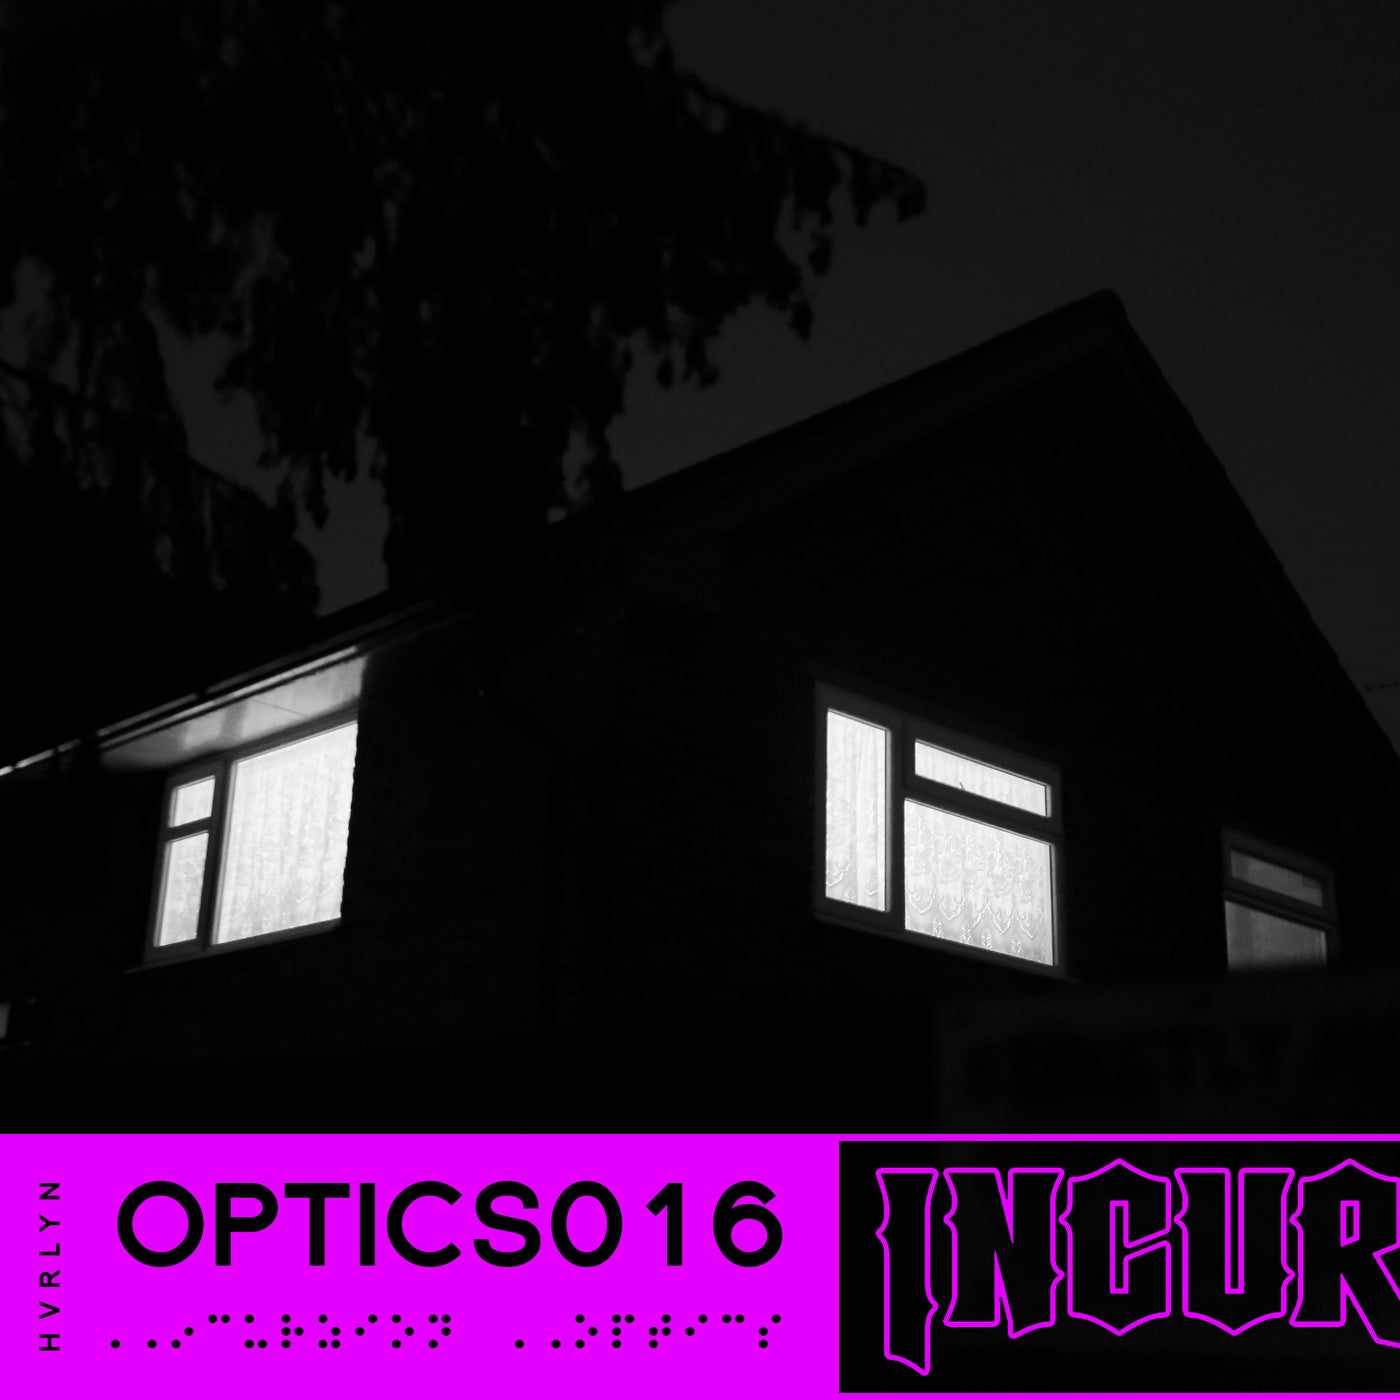 Incurzion Optics 016: